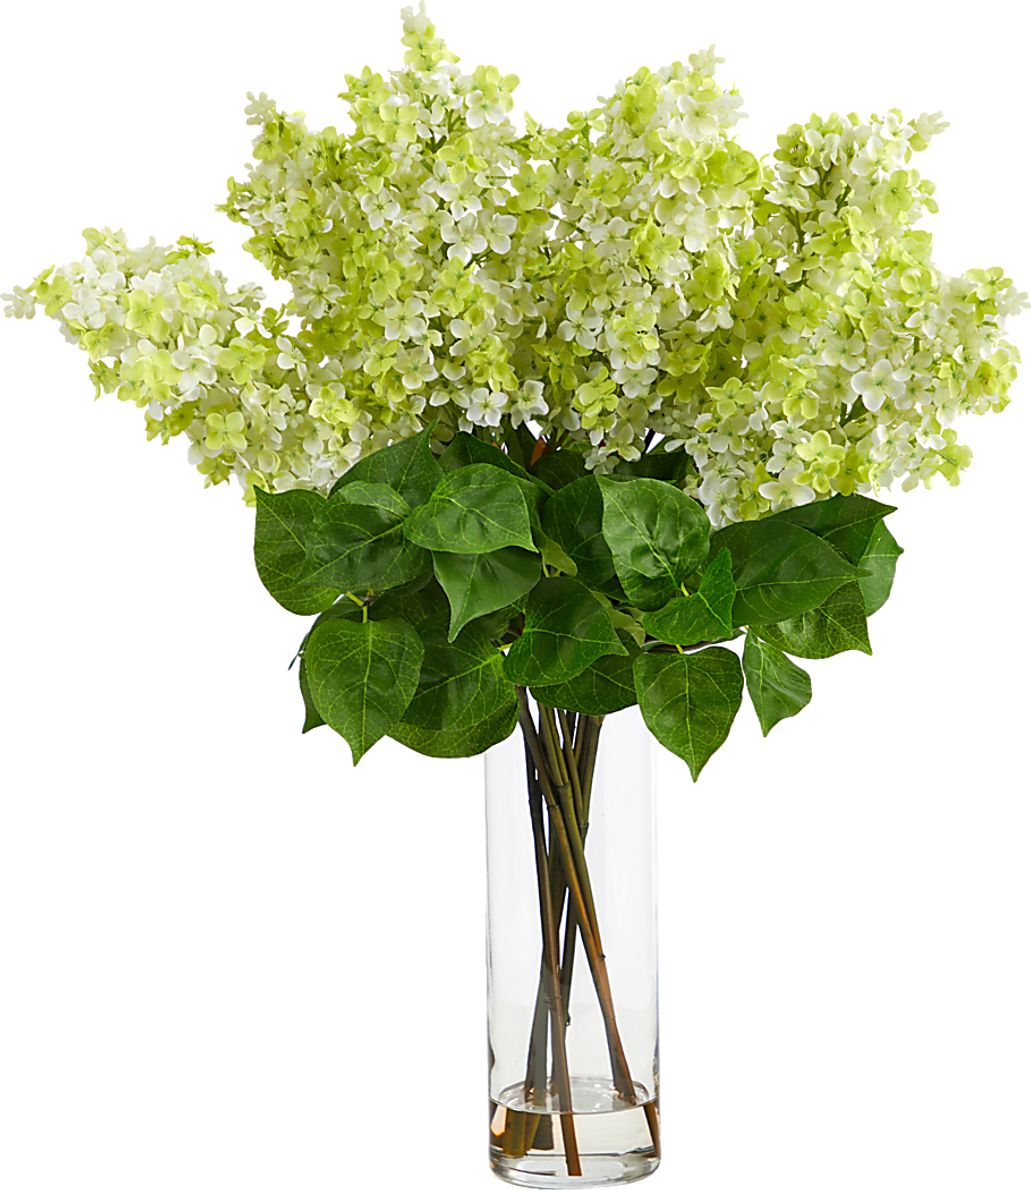 Beeger Green Floral Arrangement with Vase